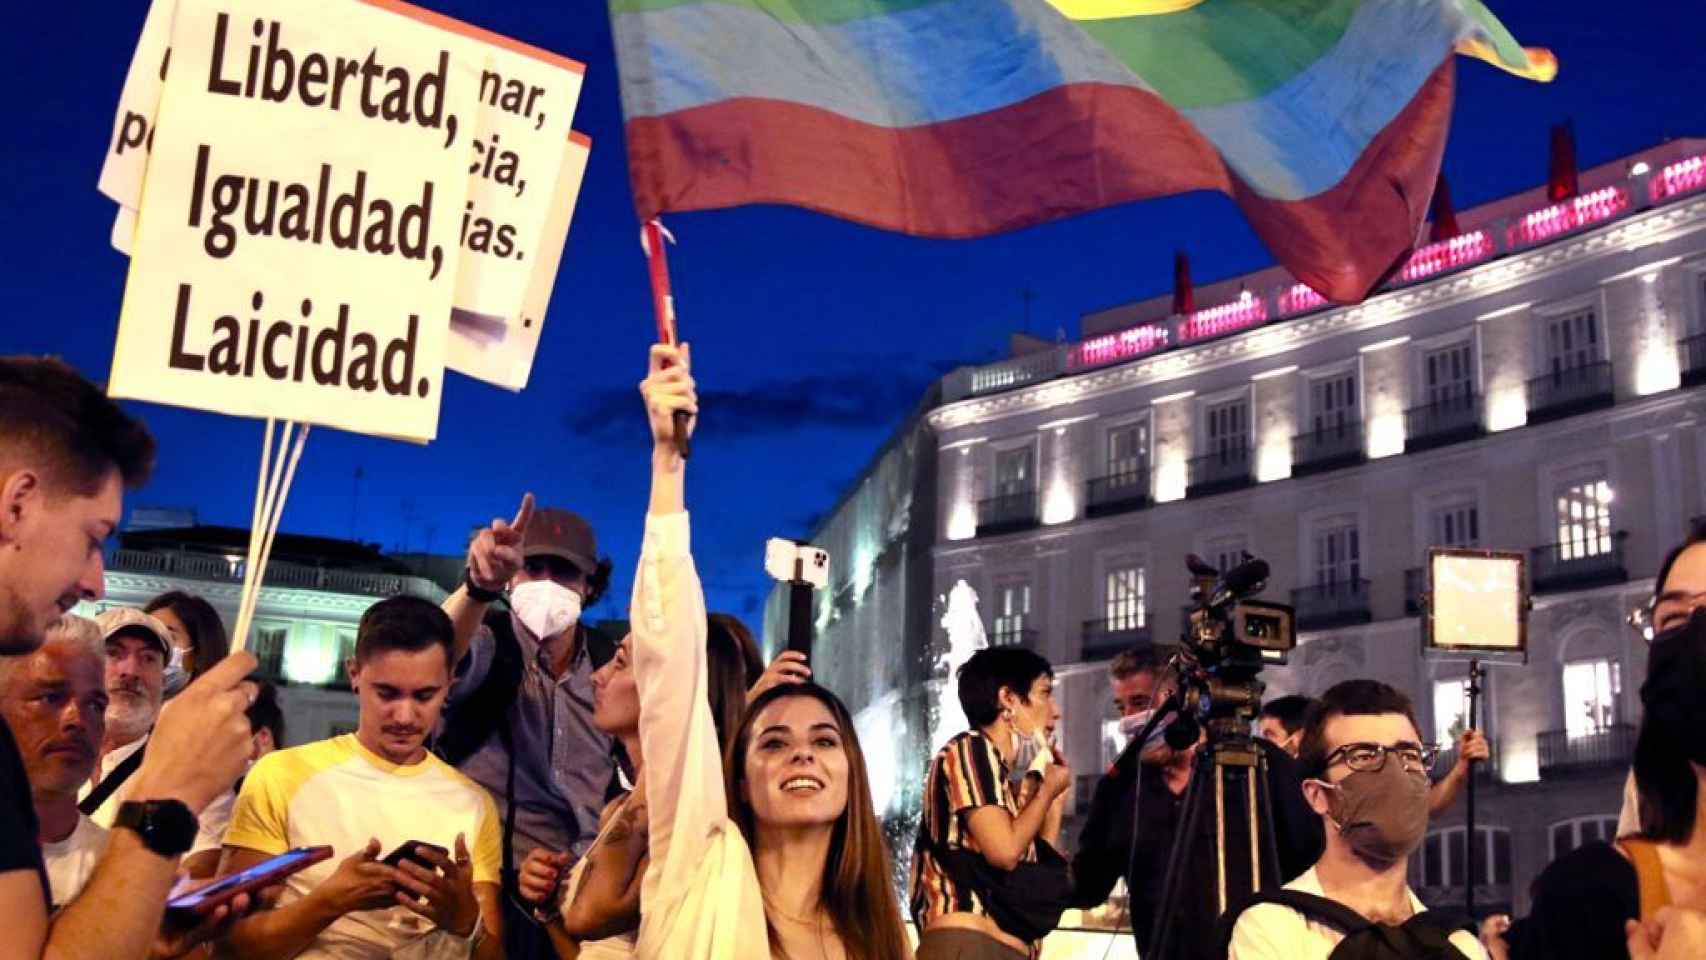 Una manifestante ondea una bandera LGTBI durante la manifestación contra la homofobia en Madrid.